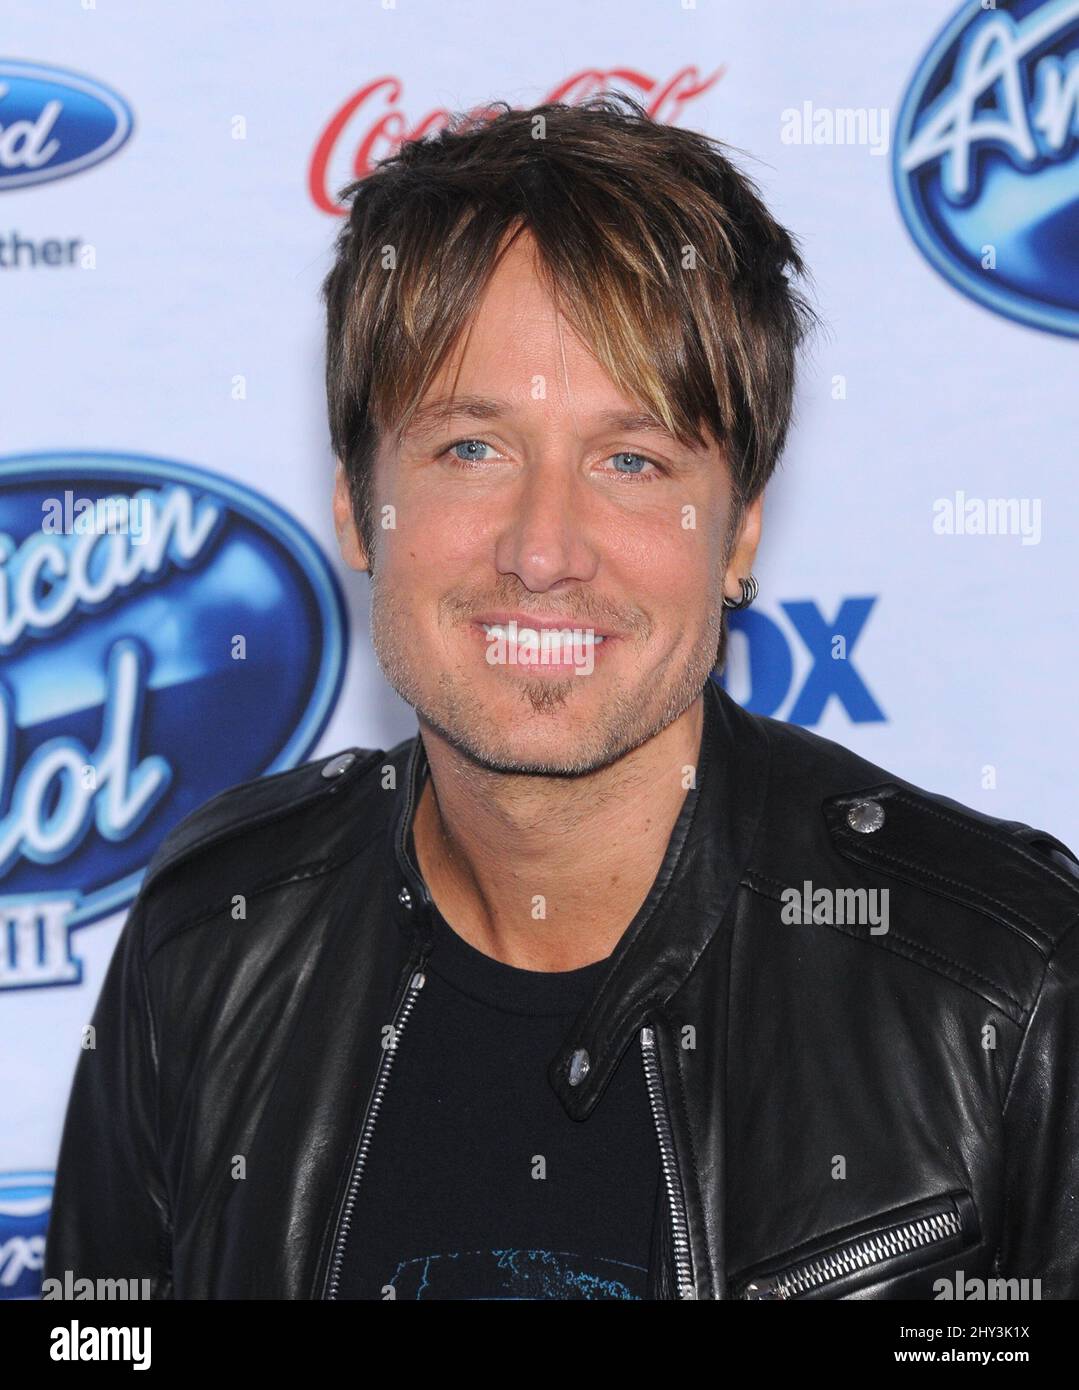 Keith Urban assiste à l'événement des 13 finalistes de l'American Idol, à Los Angeles Banque D'Images